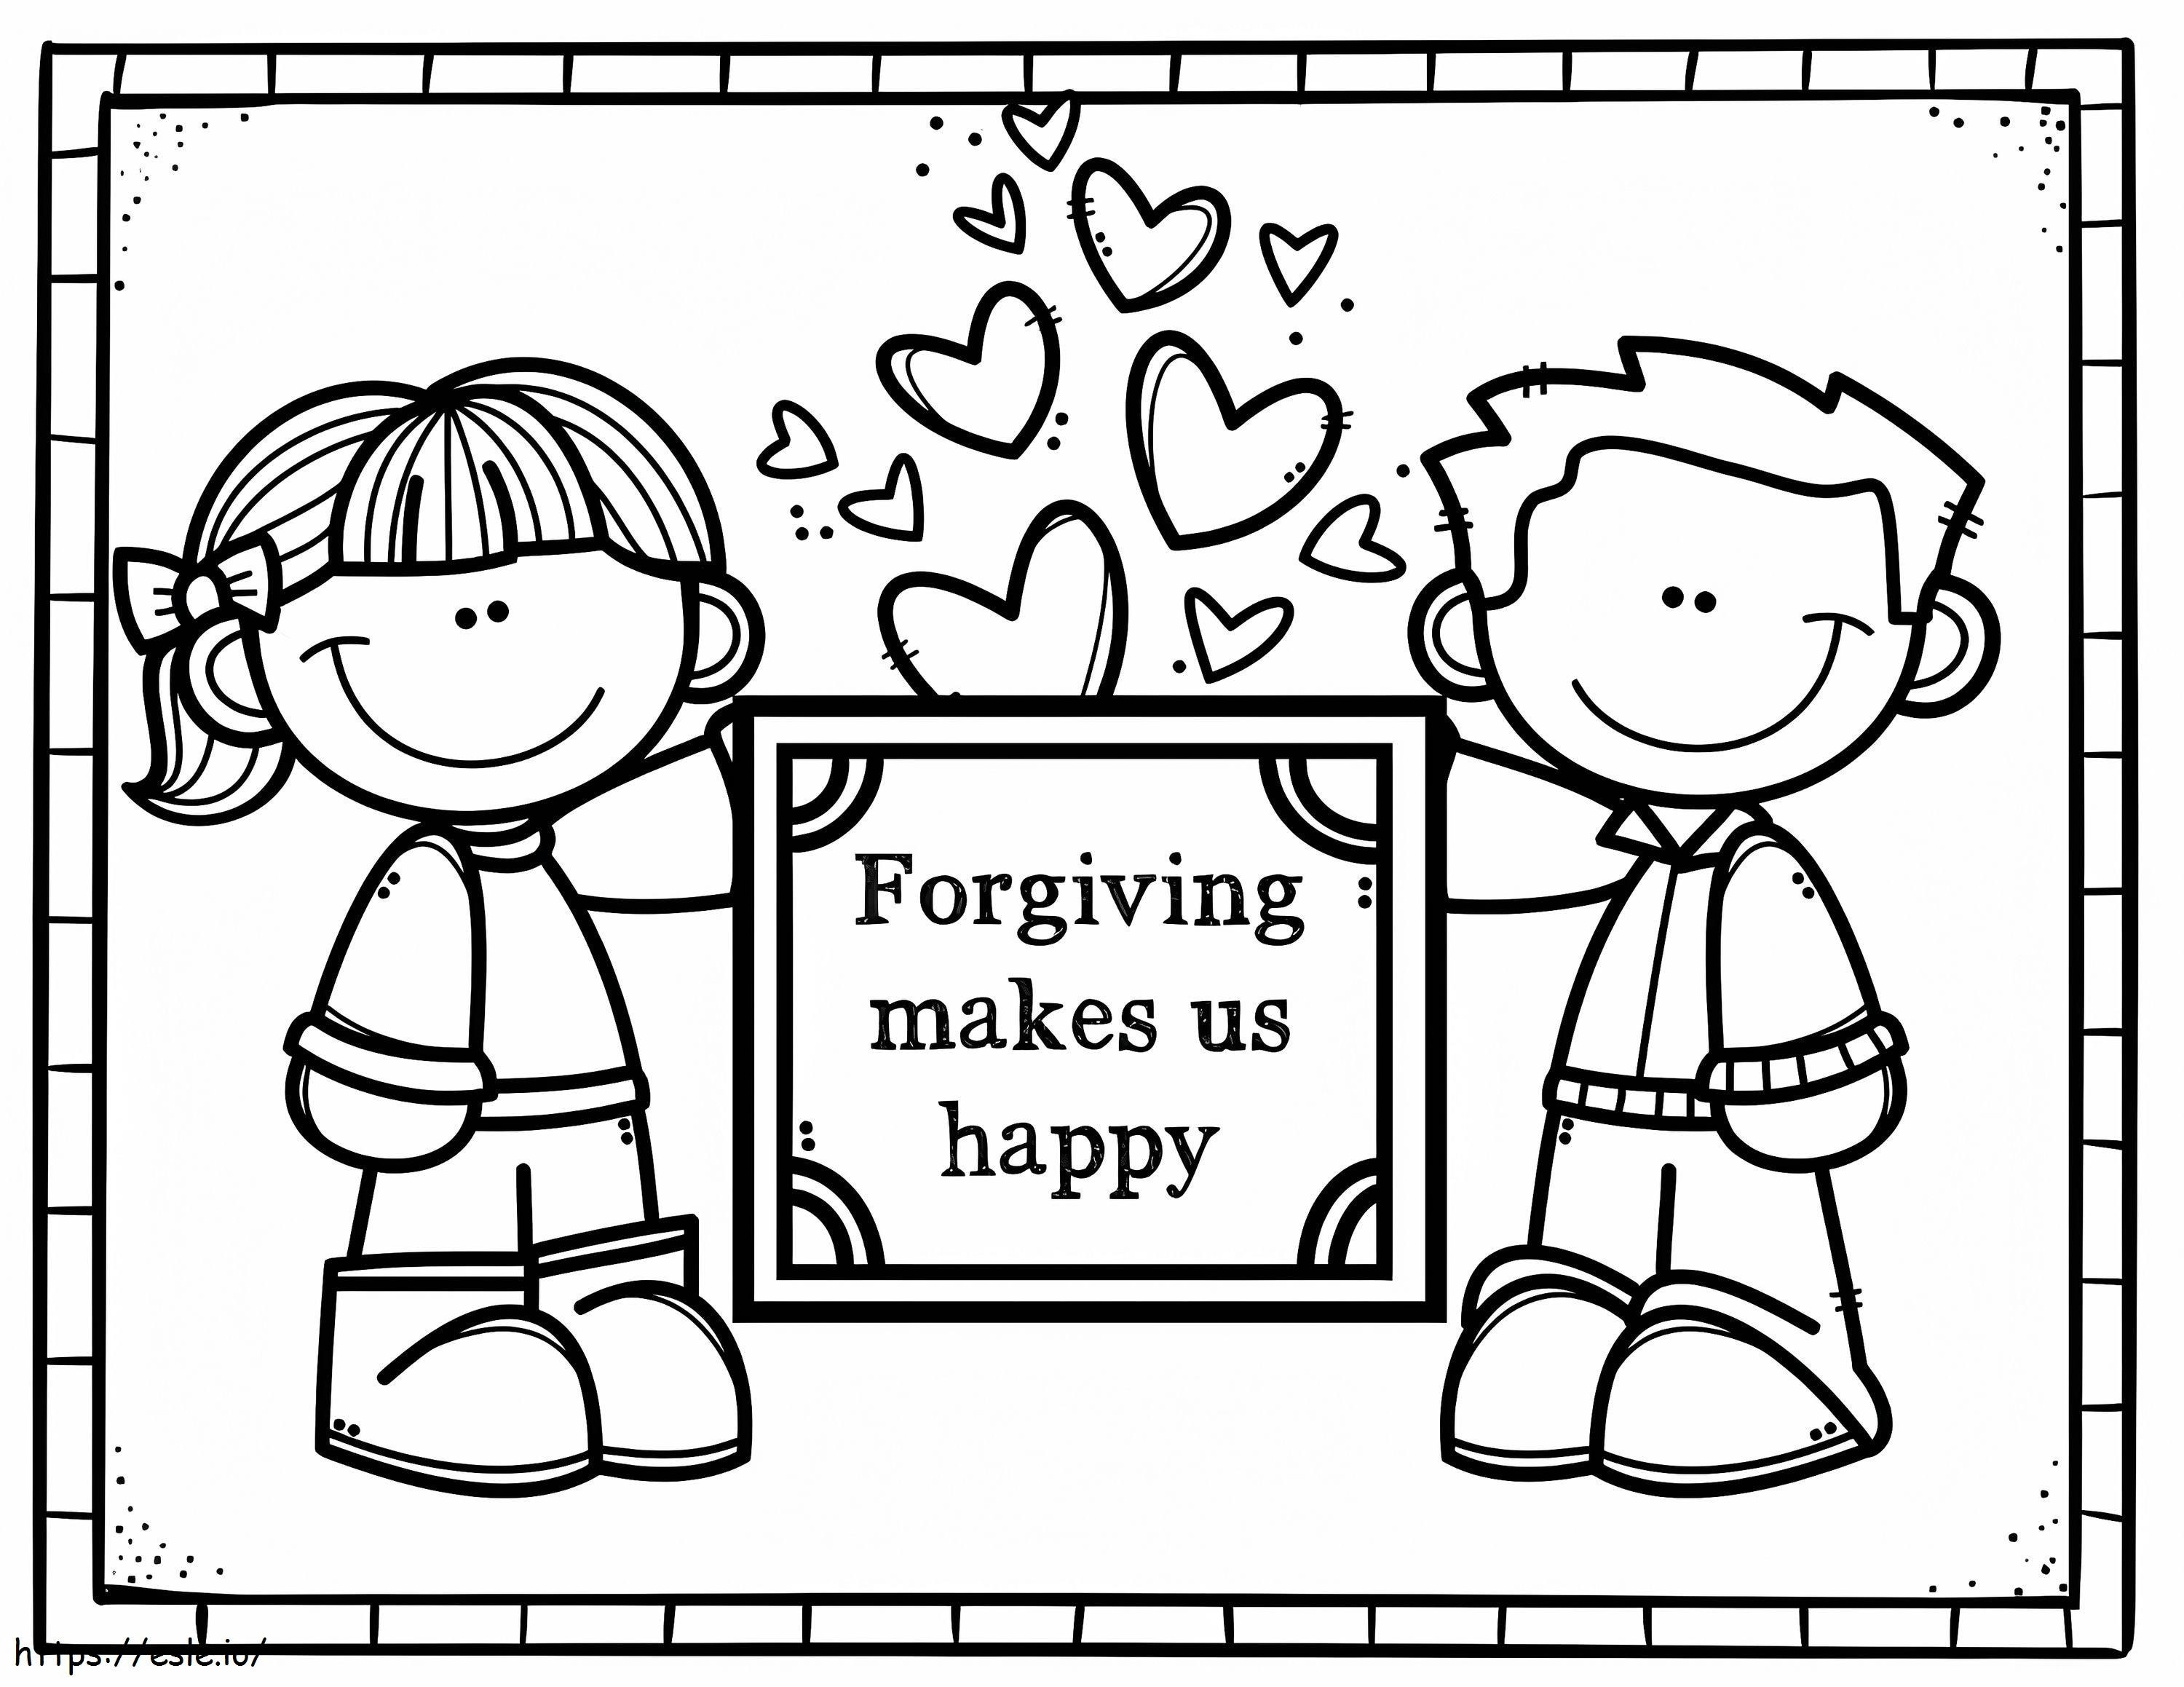 Yazdır Affetmek Bizi Mutlu Eder boyama